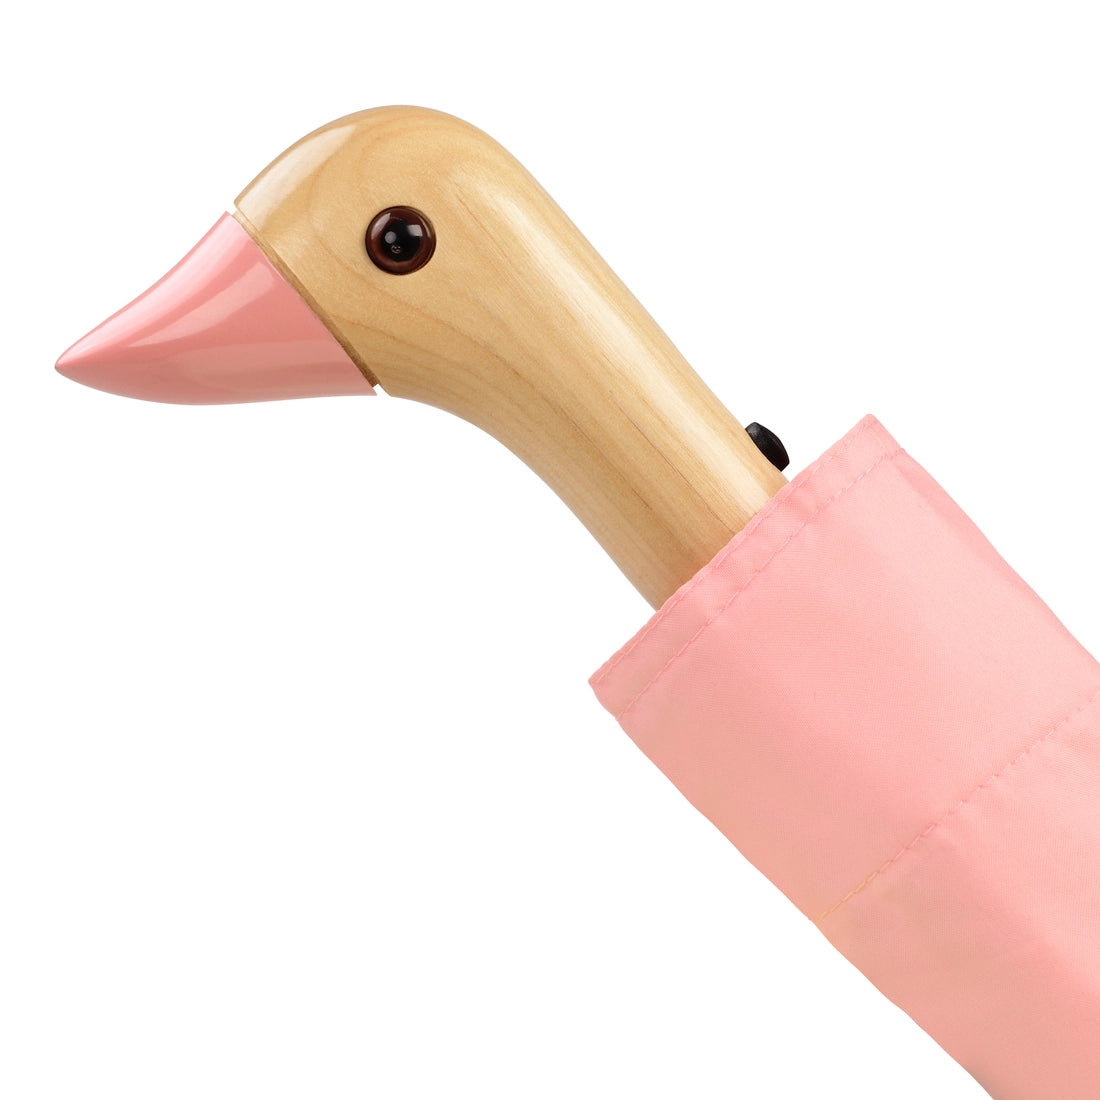 Original Duckhead Umbrella - Pink